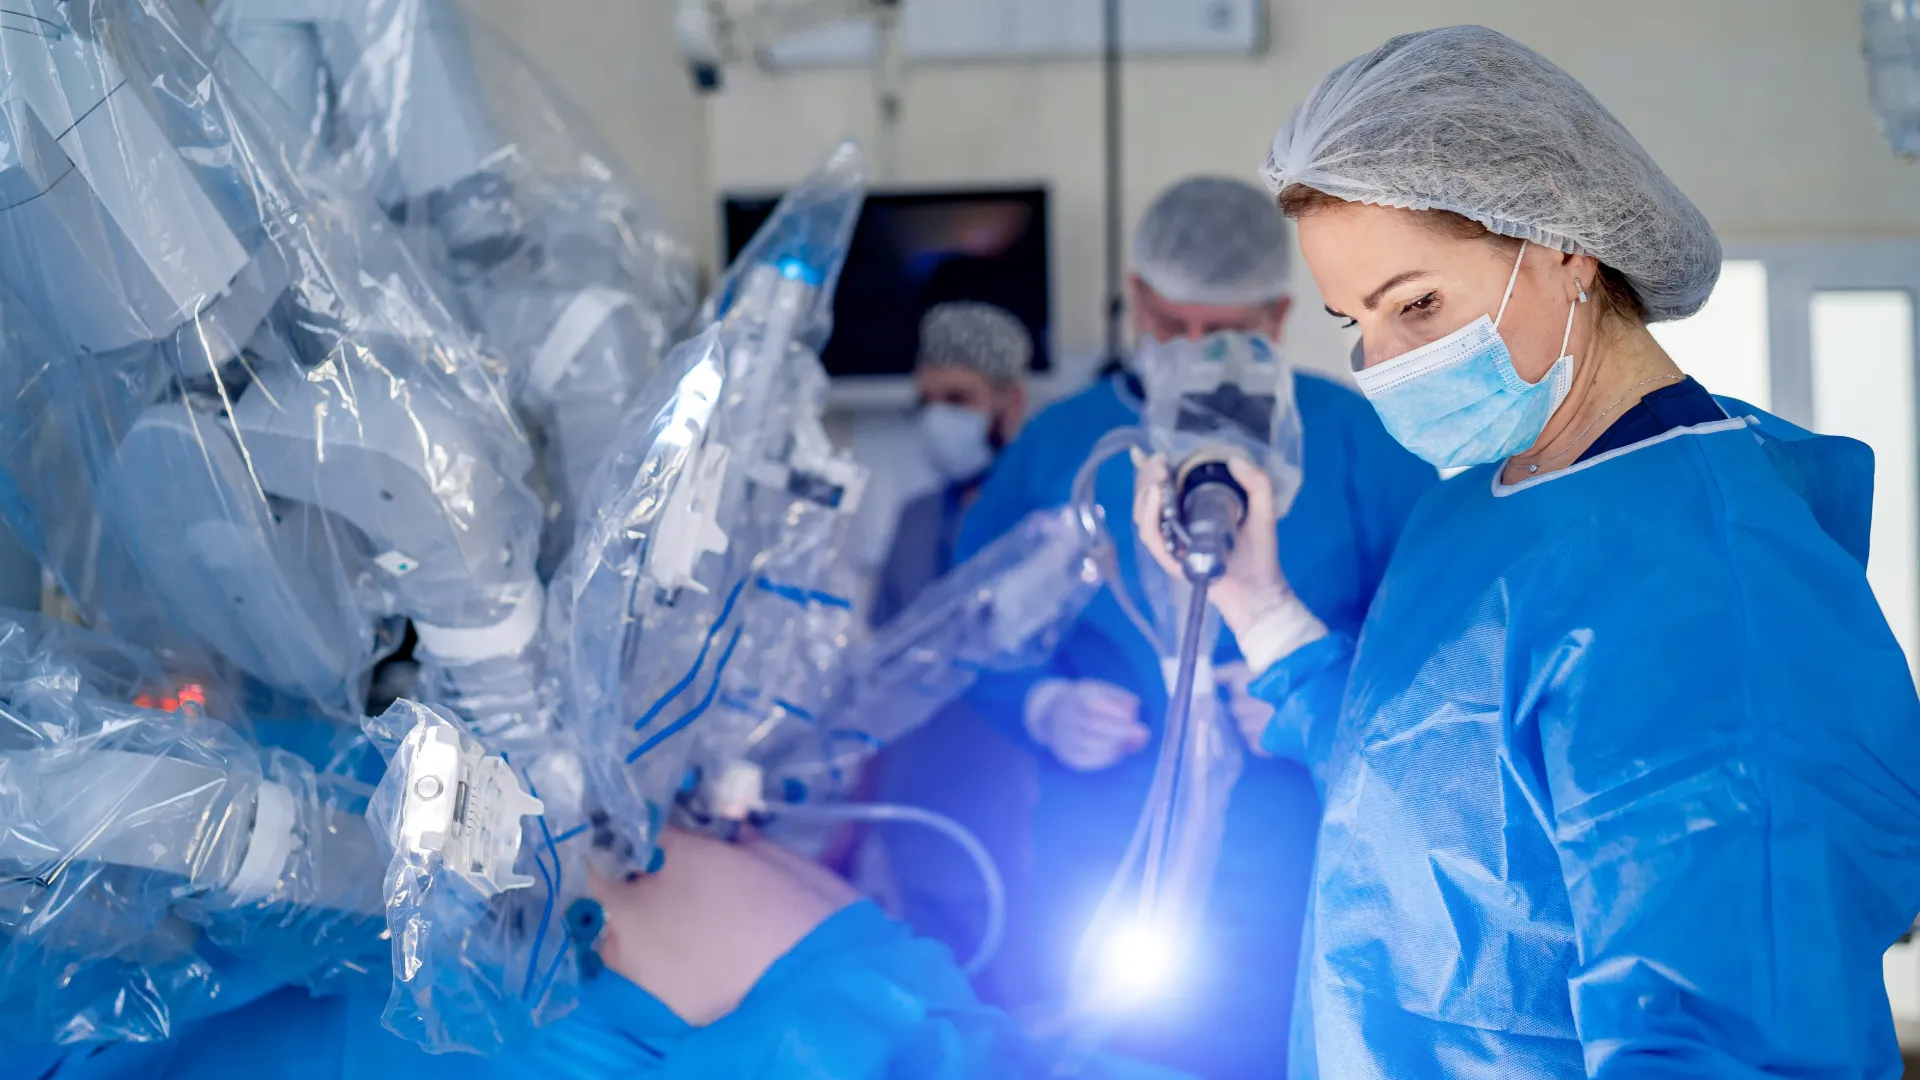 Welche Vorteile hat eine laparoskopische (Schlüsselloch-Chirurgie) Nierenoperation gegenüber einer offenen Operation?